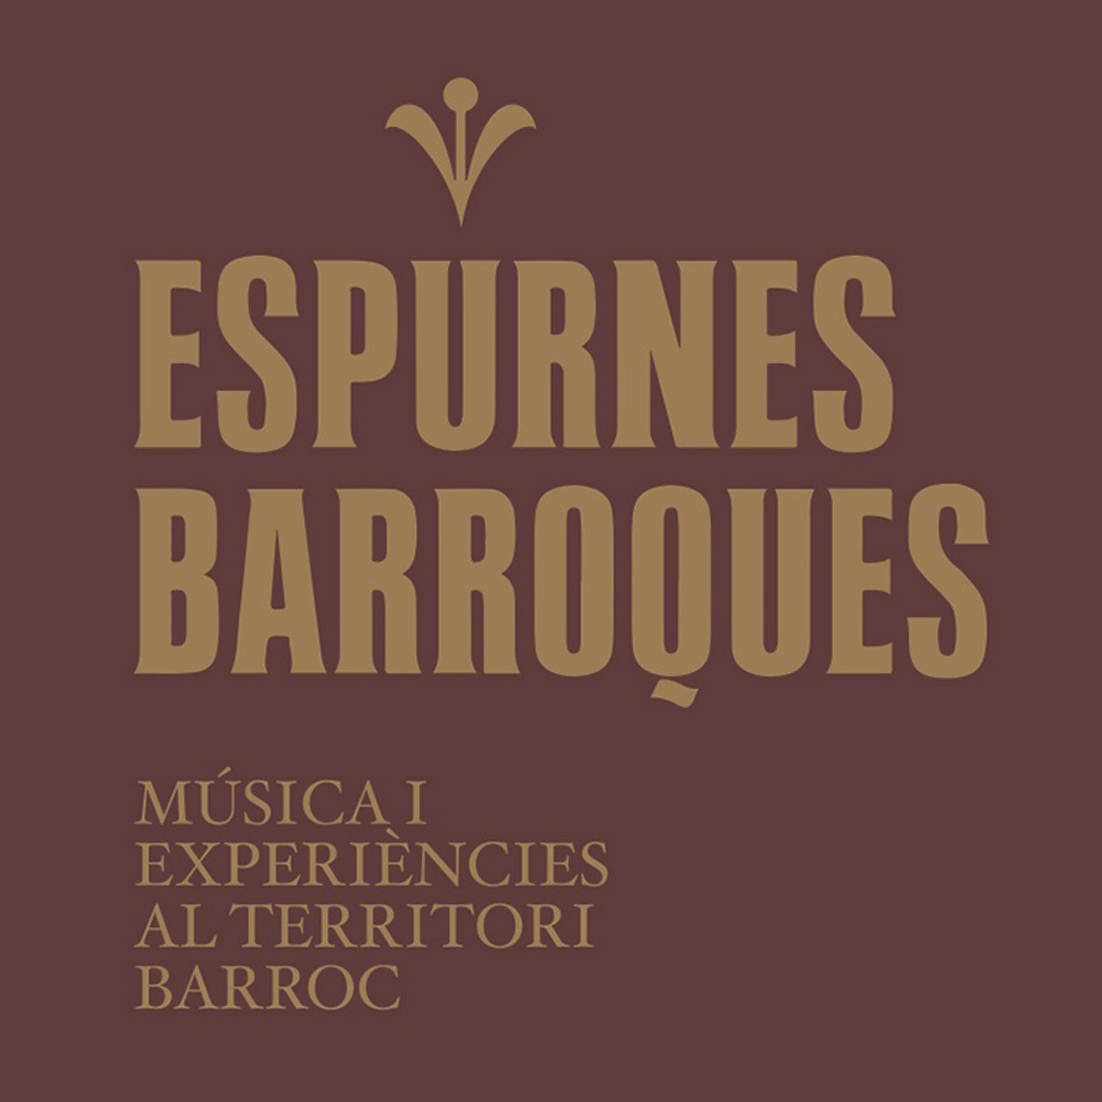 Festival Espurnes Barroques a Coaner (Sant Mateu de Bages): Concert i tast 'Divertiment de primavera'